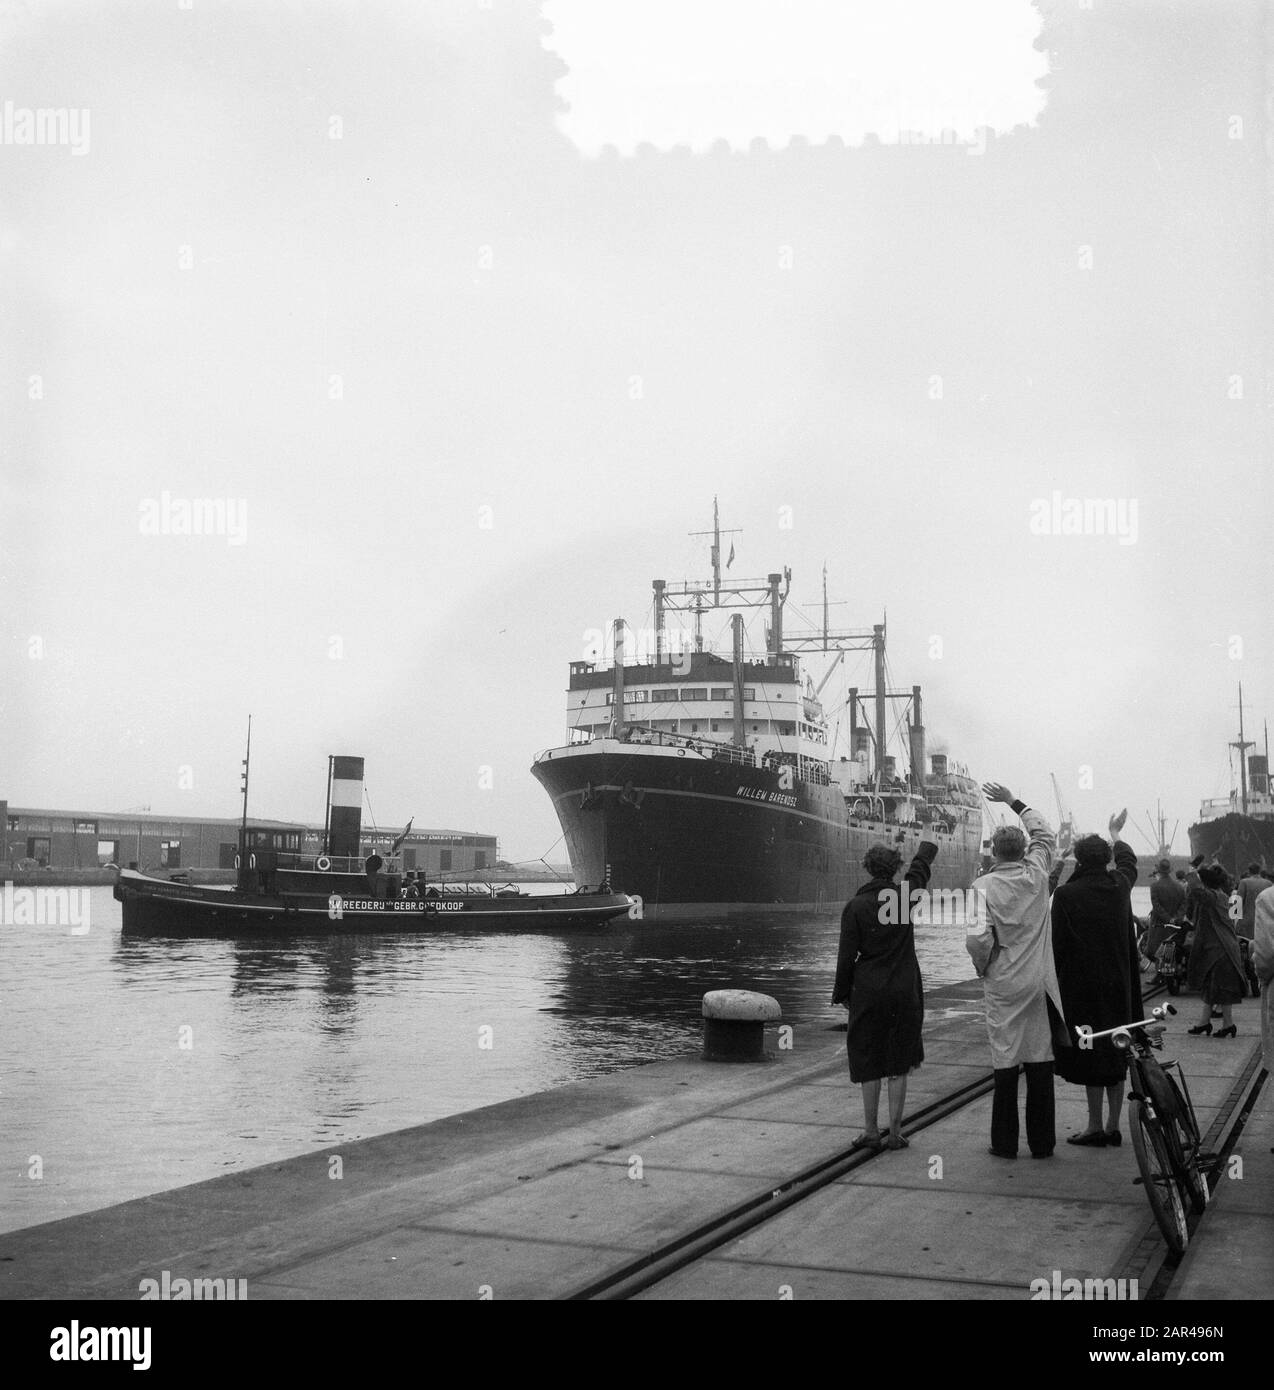 Departure Willem Barends for whaling Date: October 28, 1953 Keywords: DEPART, ships Institution name: MS Willem Barentz Stock Photo